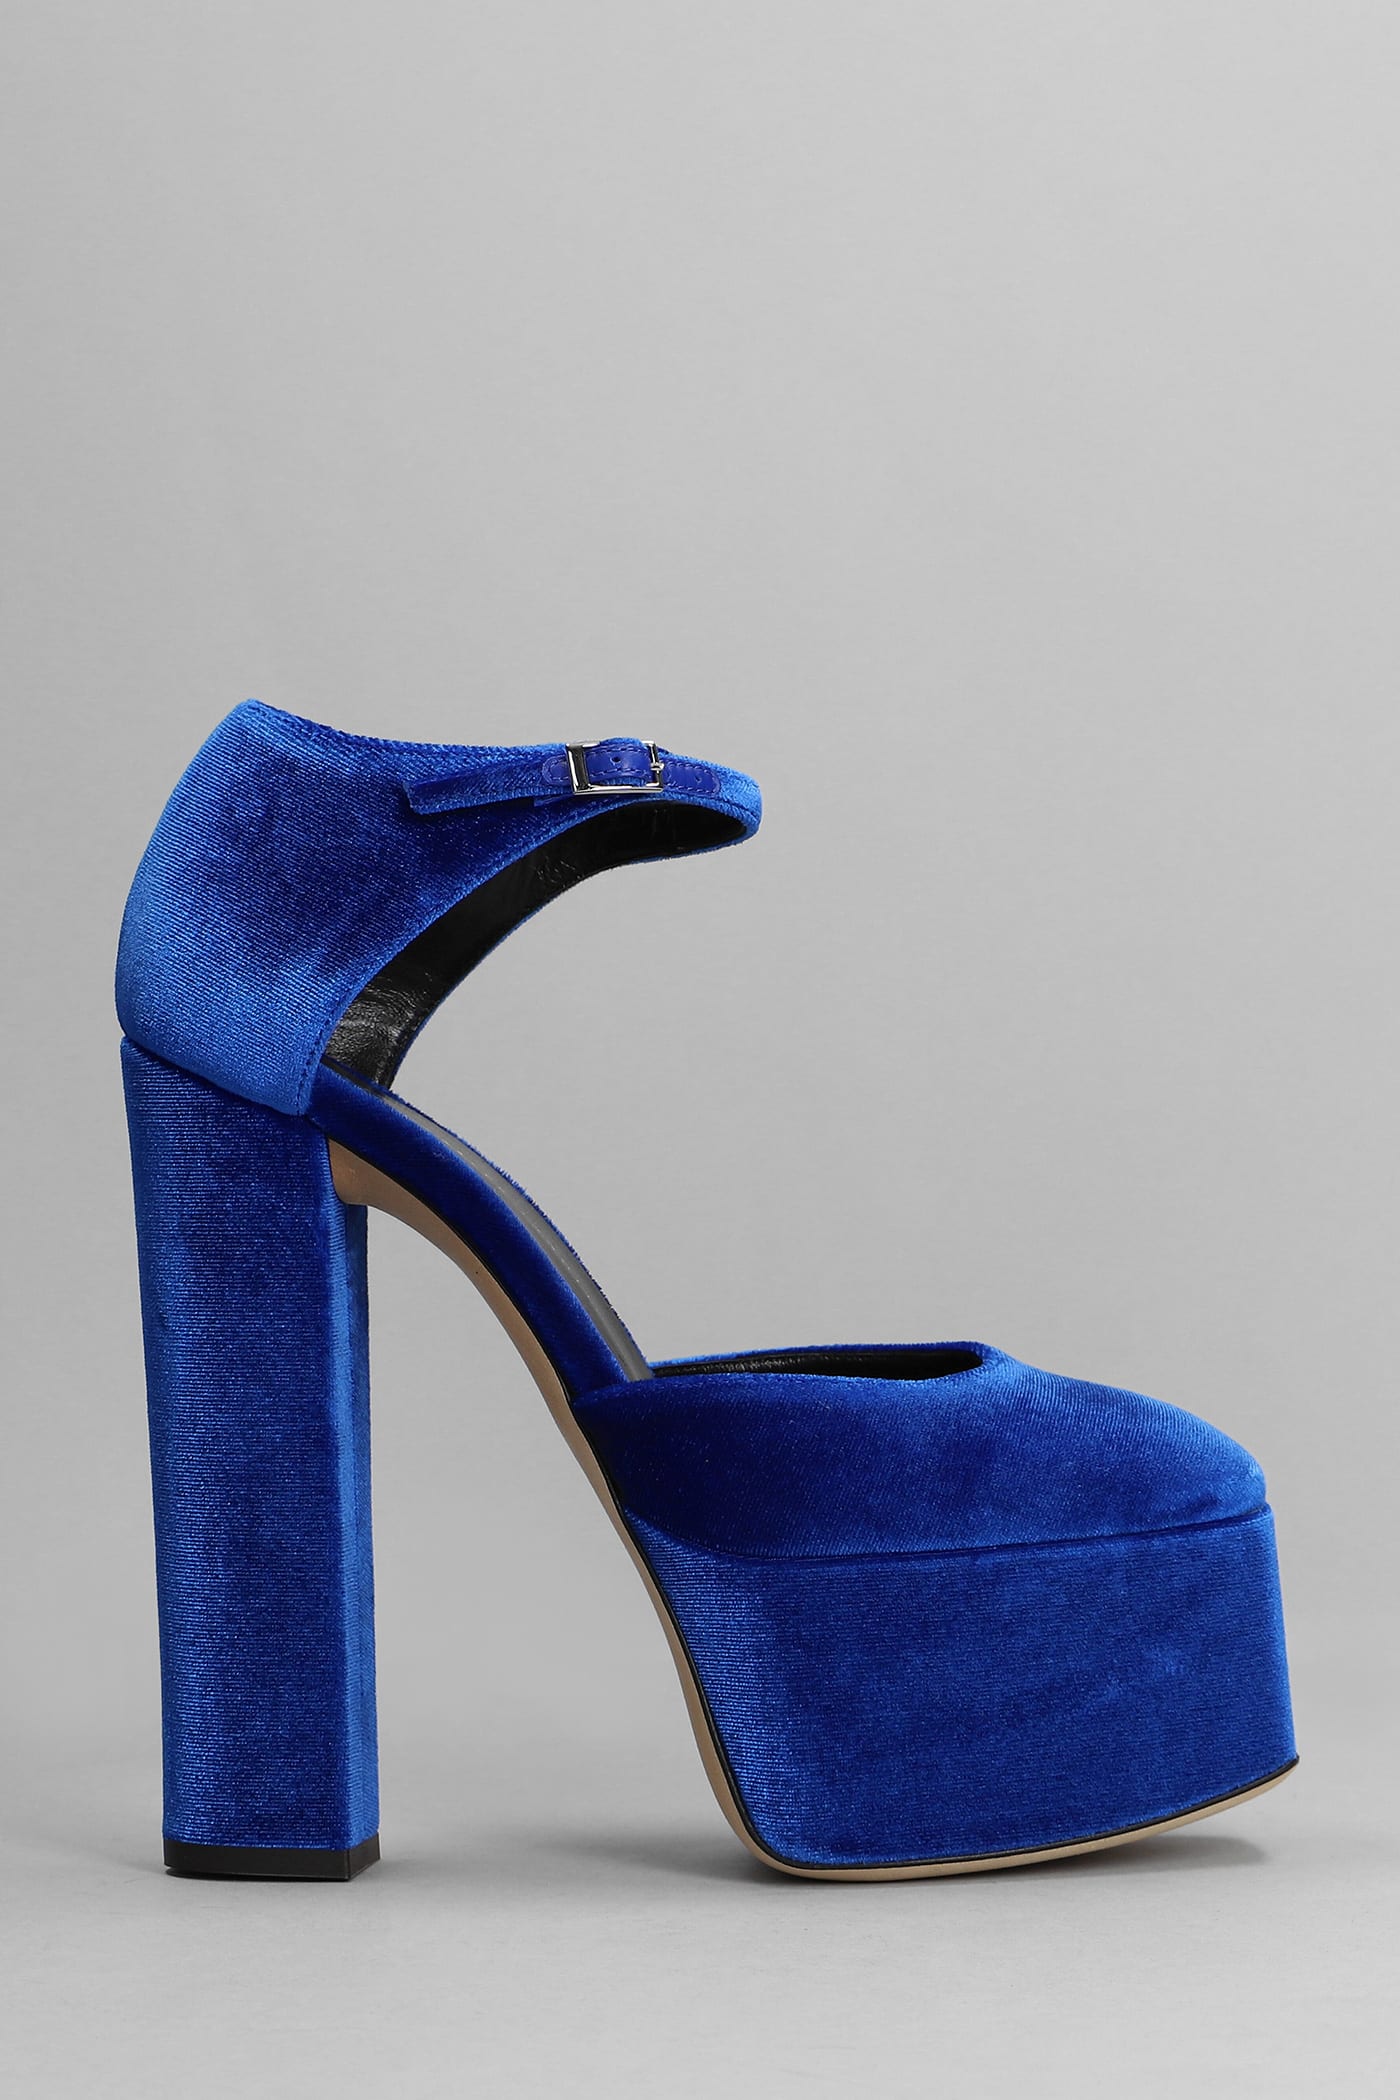 Giuseppe Zanotti Bebe Sandals In Blue Velvet